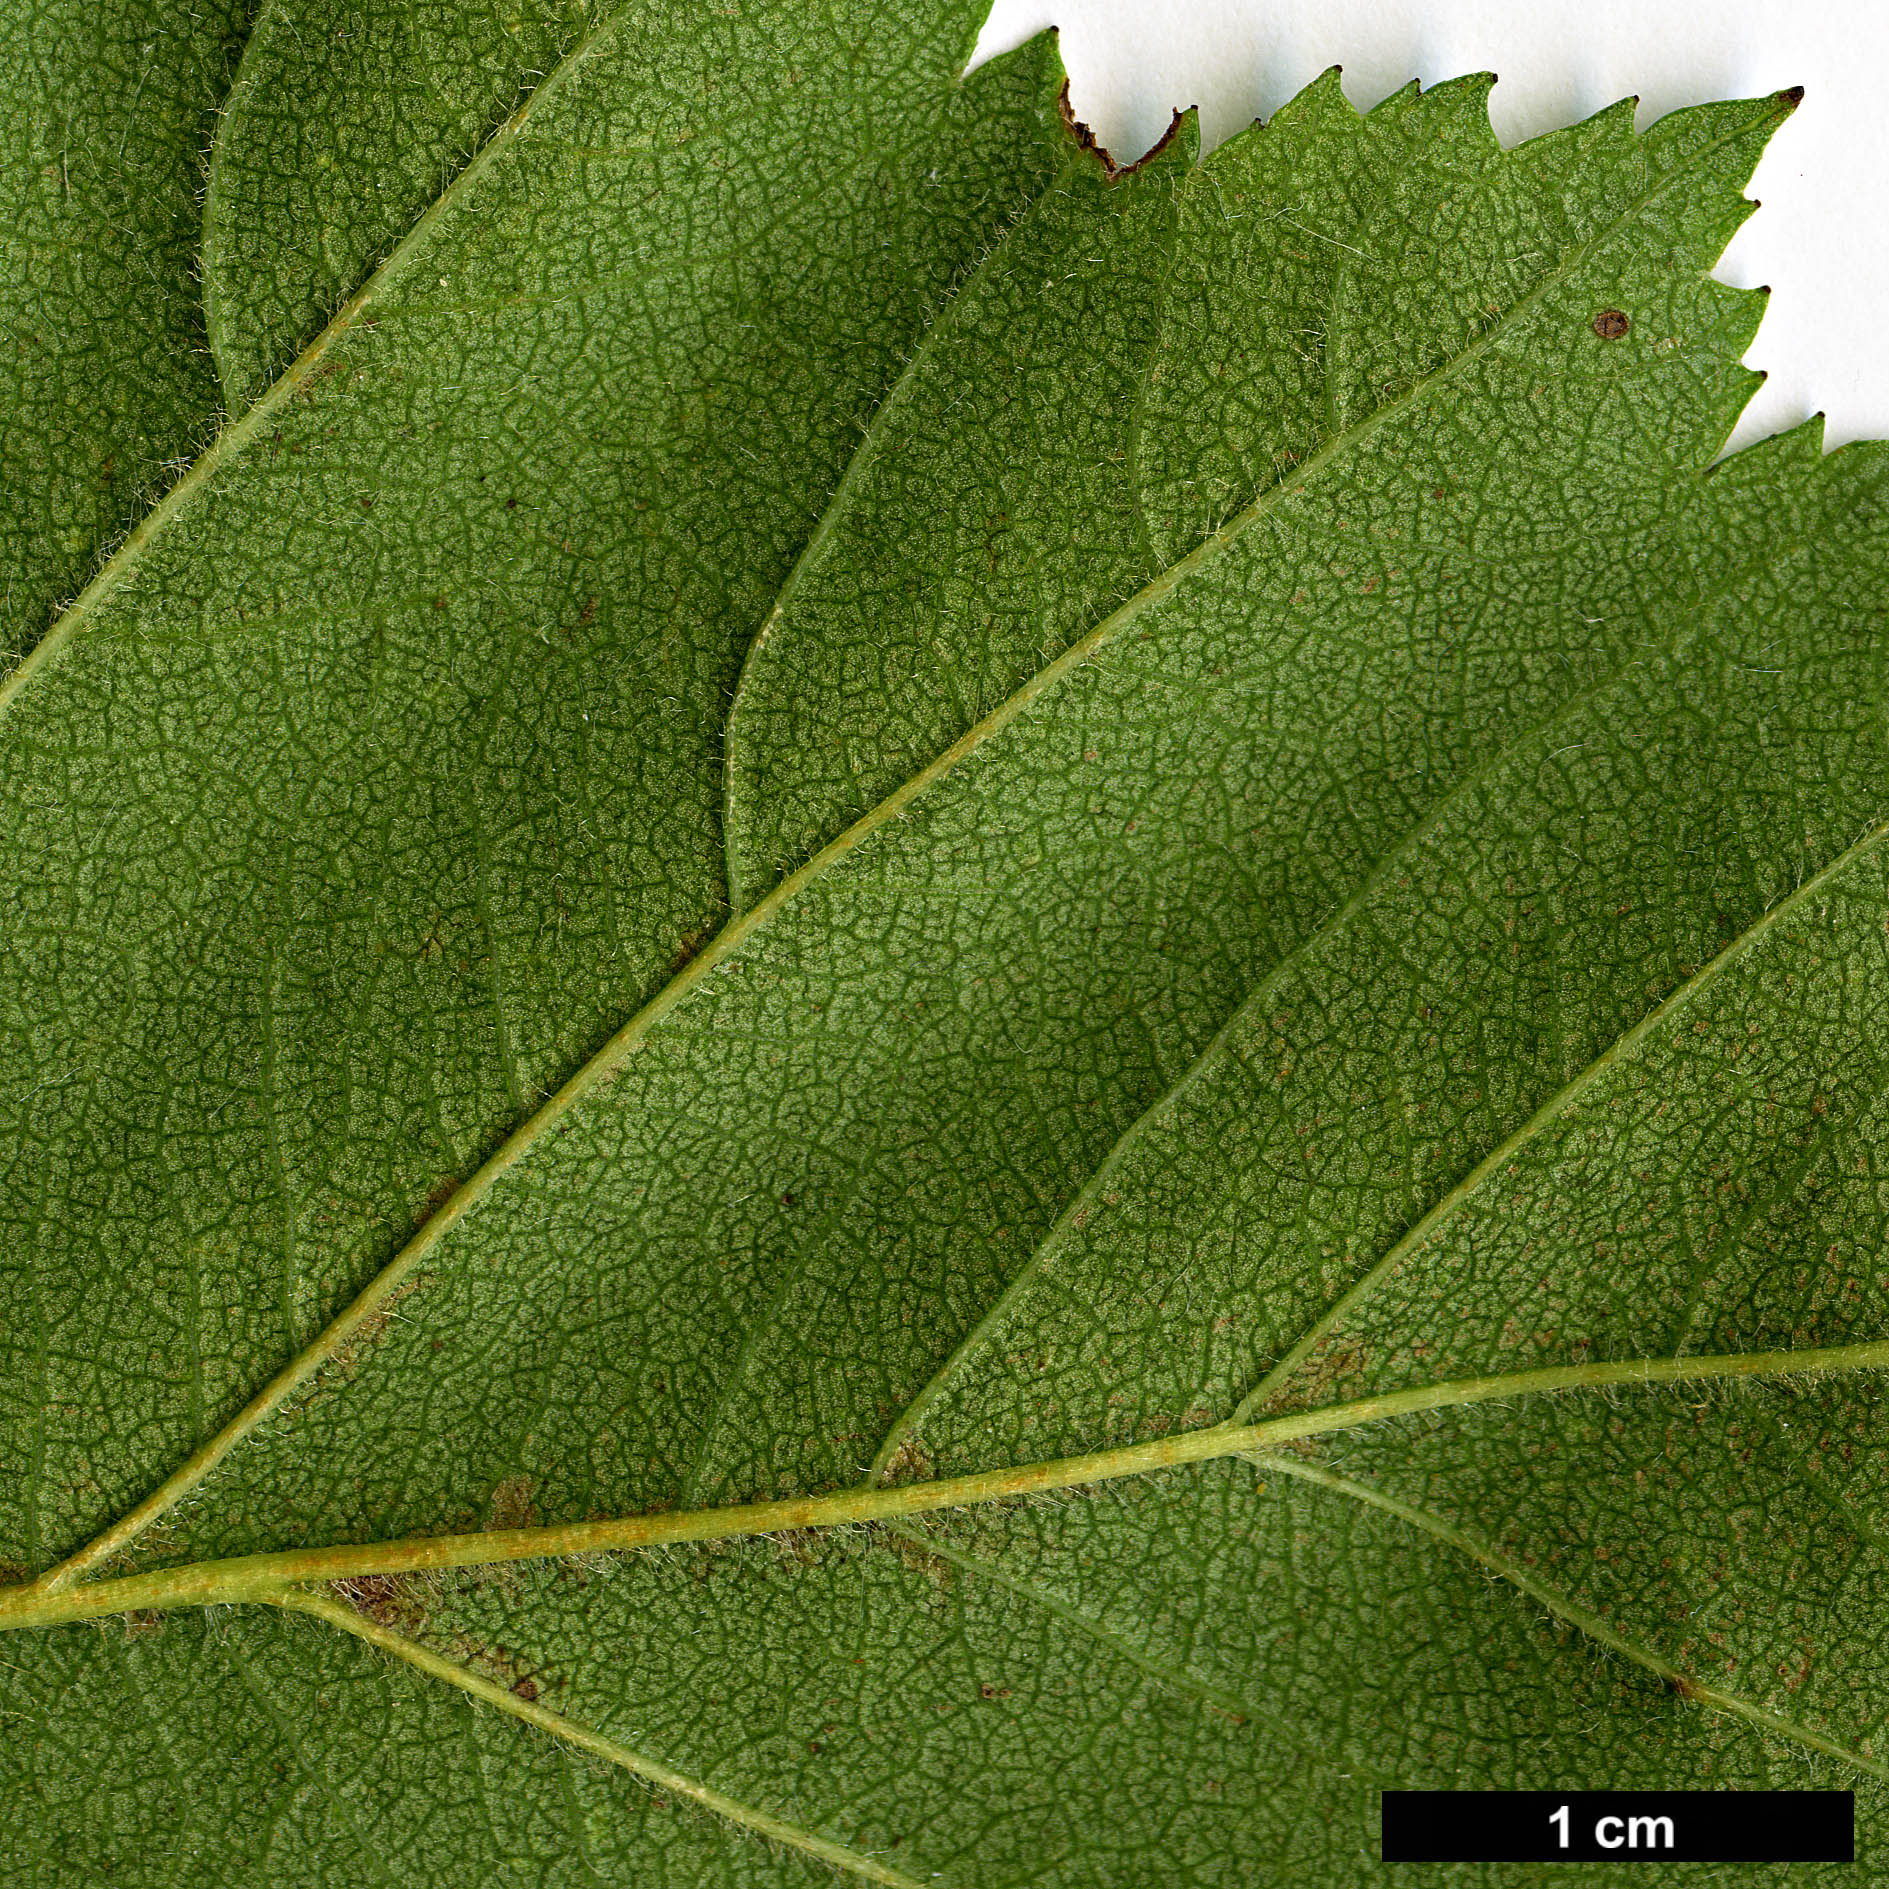 High resolution image: Family: Rosaceae - Genus: Crataegus - Taxon: jonesiae